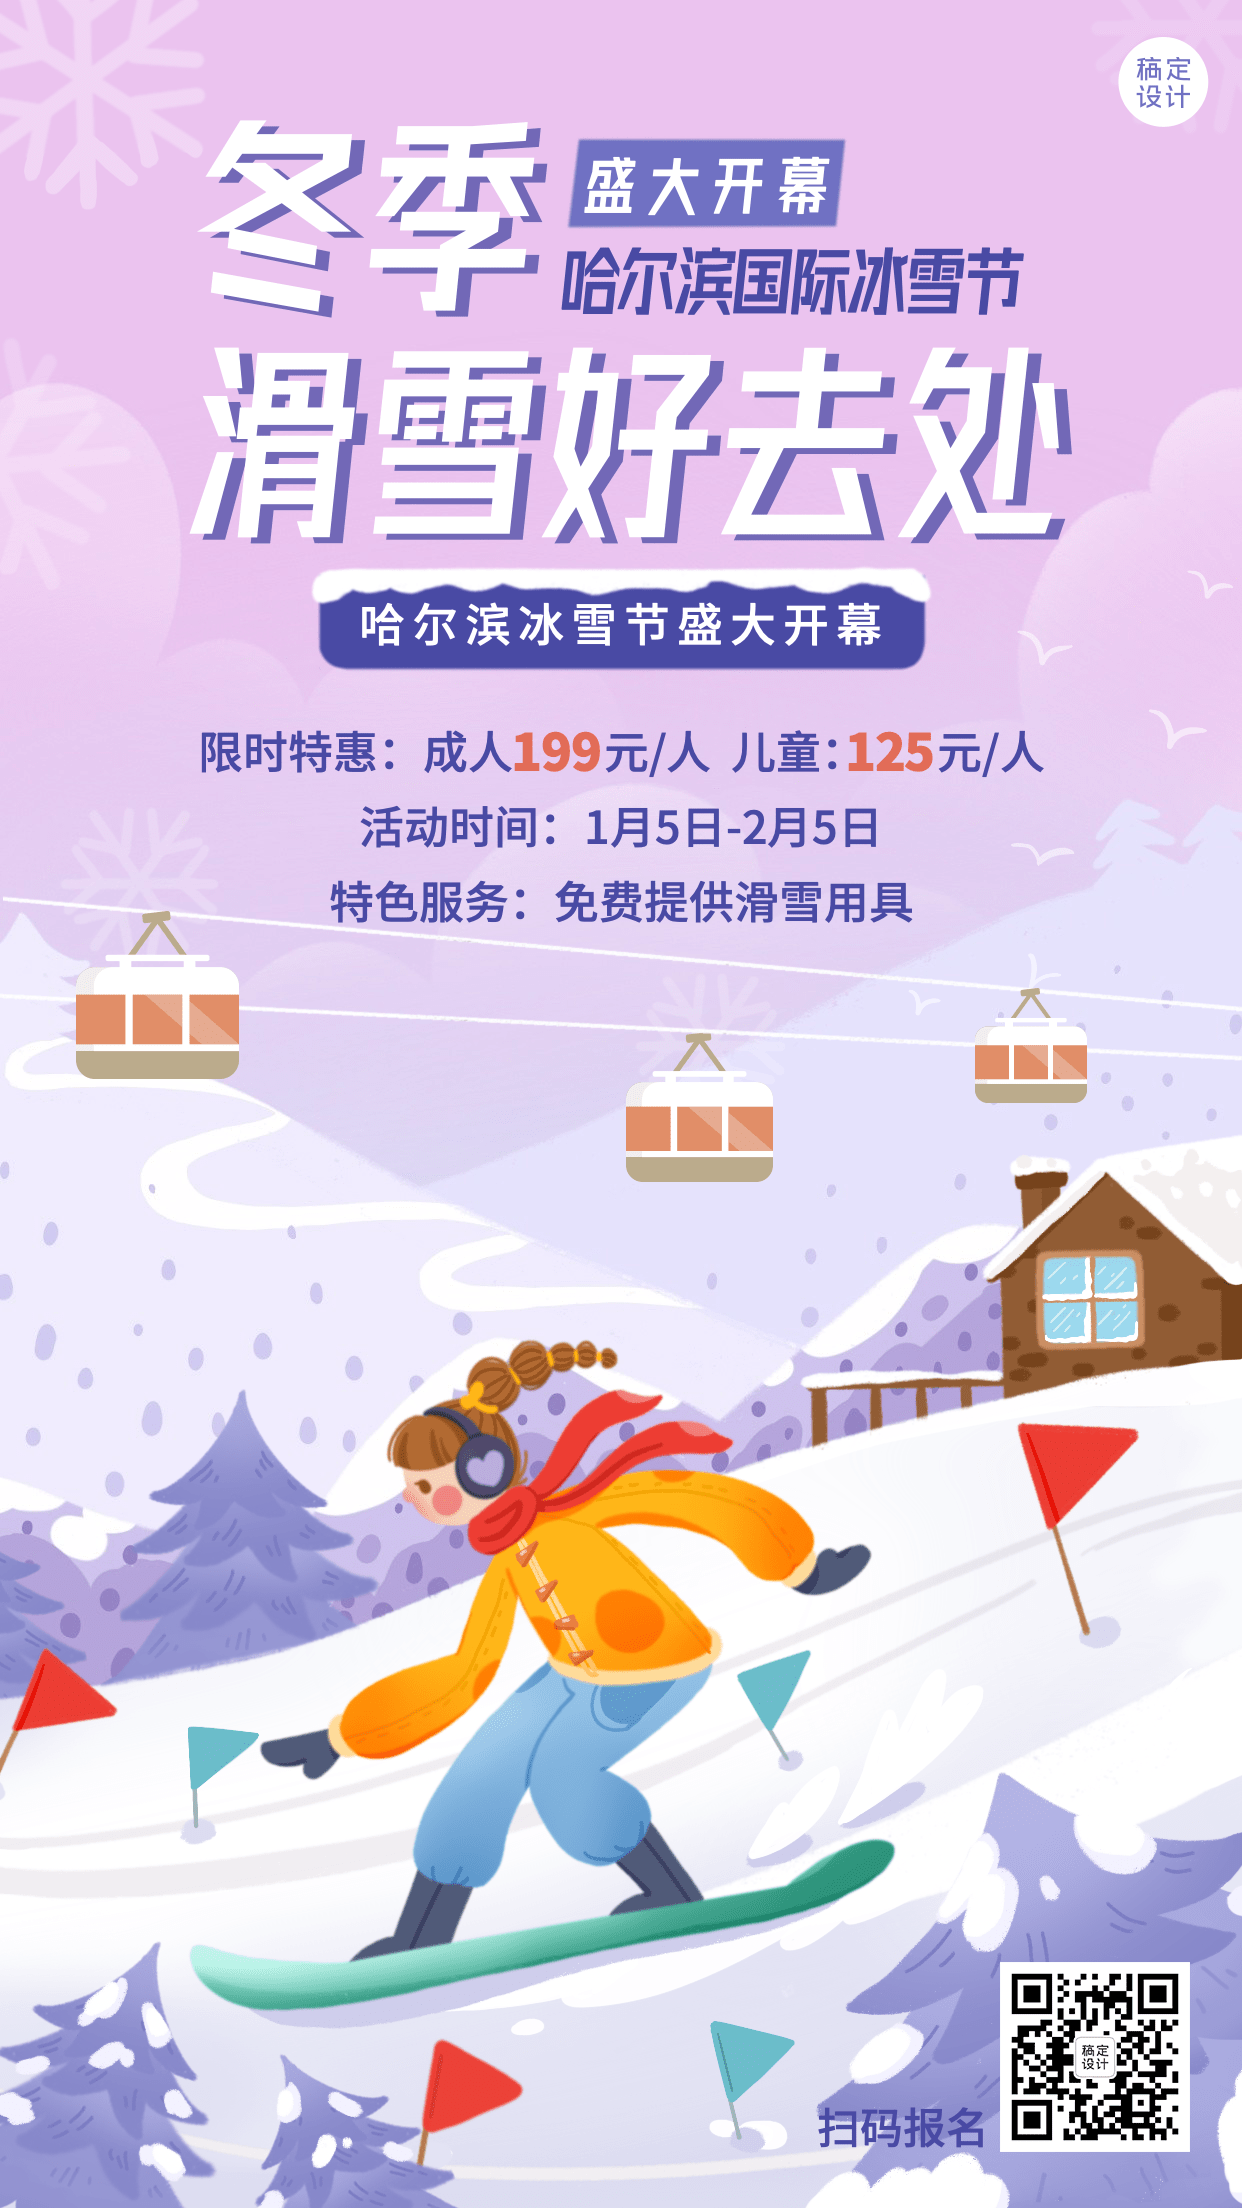 冬季冰雪旅游哈尔滨冰雪节活动宣传手绘海报预览效果